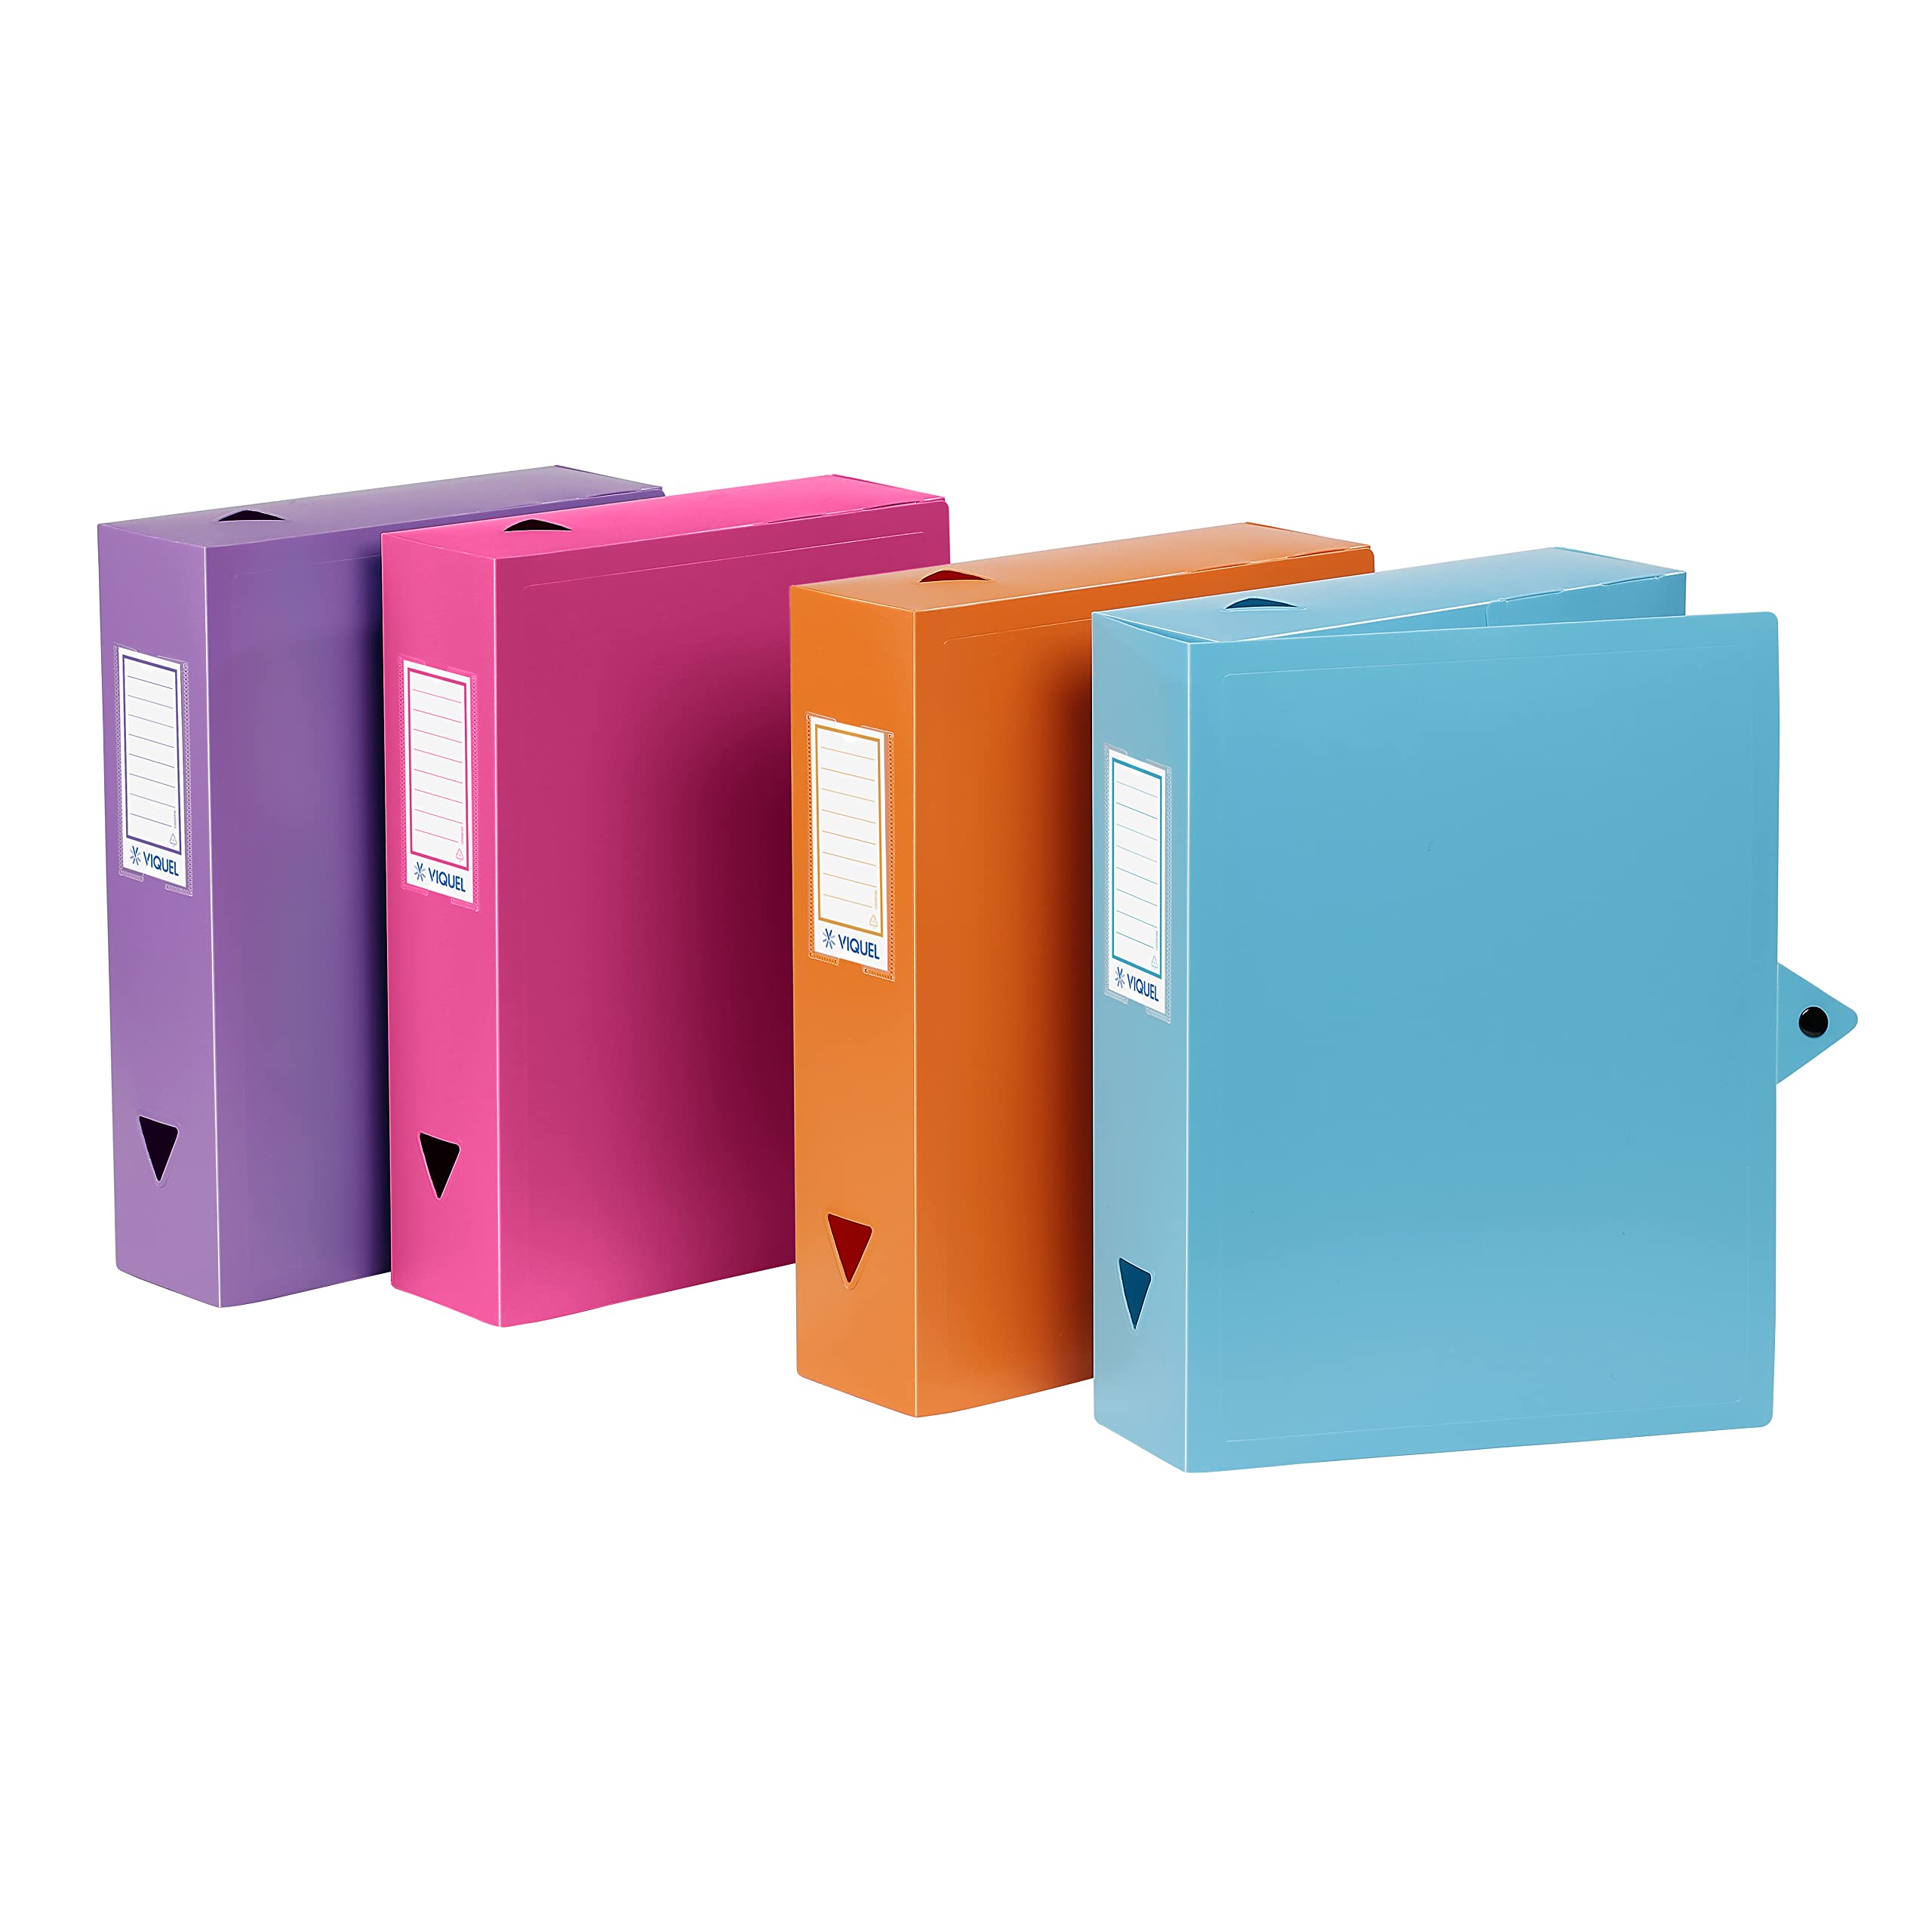 Viquel - 6 Kunststoffboxen - 6 Archivboxen mit Druckknopfverschluss - passende Aufbewahrungsboxen - Rücken 8 cm - Hergestellt in Frankreich